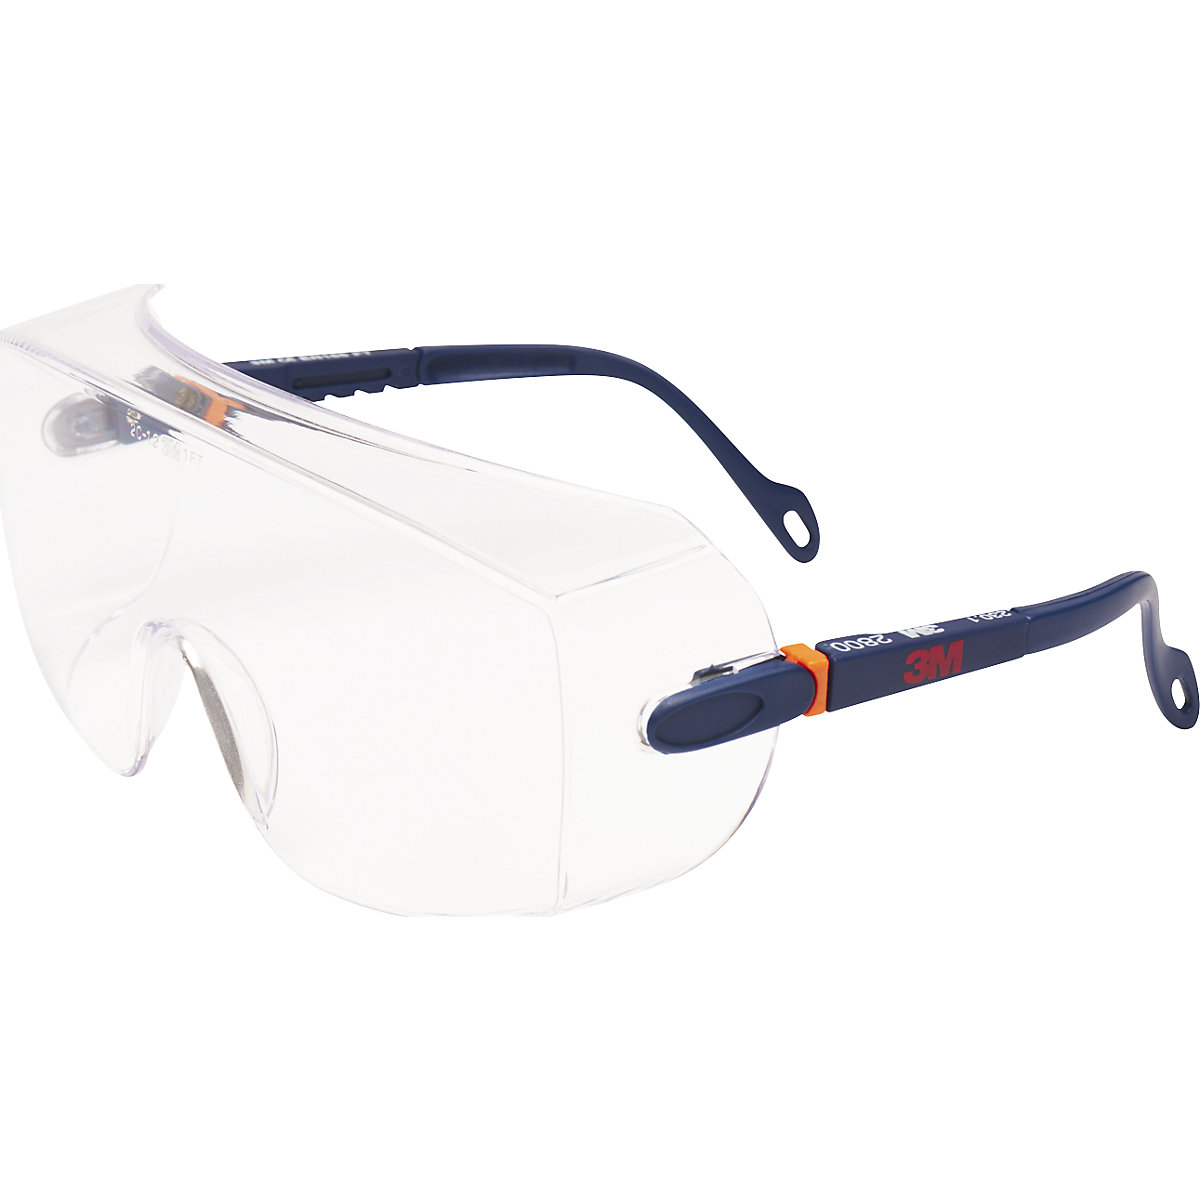 Ochelari de protecţie purtaţi deasupra altor ochelari 2800 - 3M